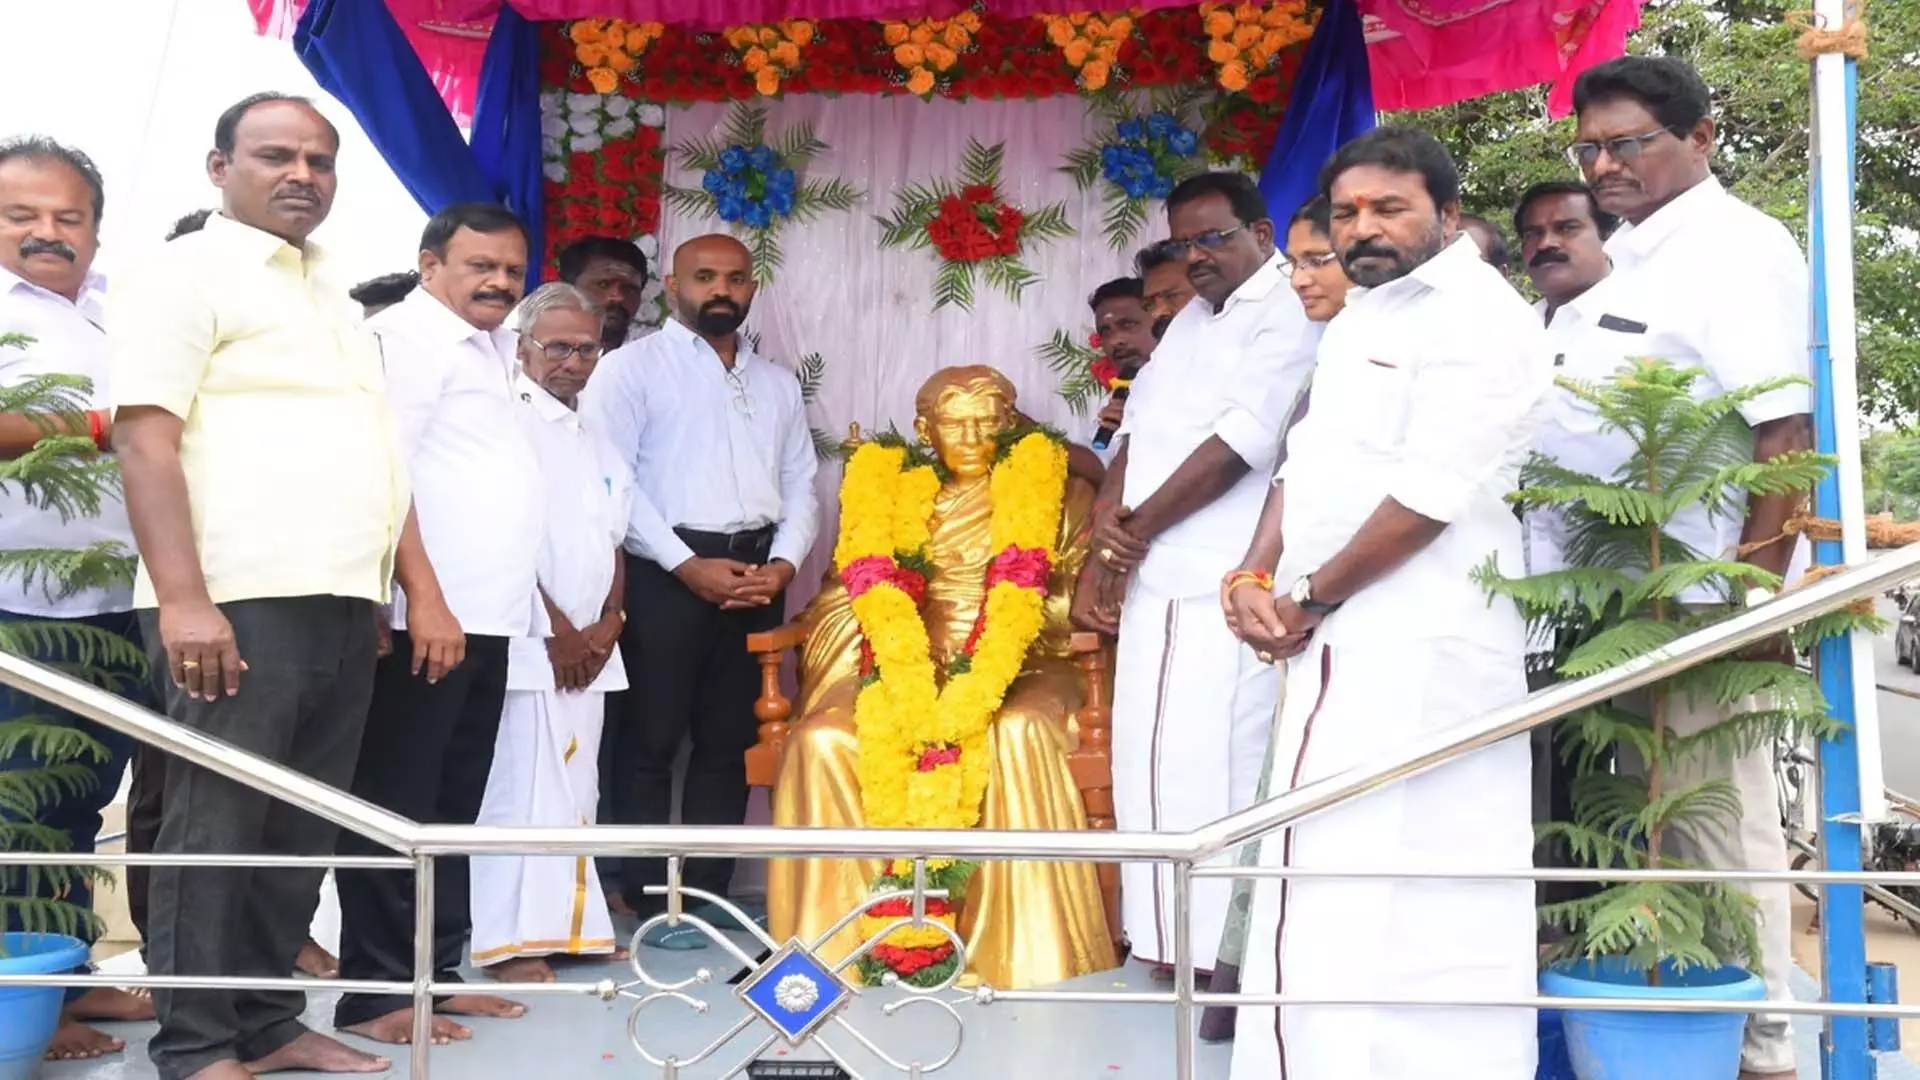 Tamil Nadu News: पुनर्स्थापित मराईमलाई अडिगल प्रतिमा को नागपट्टिनम में नया घर मिला